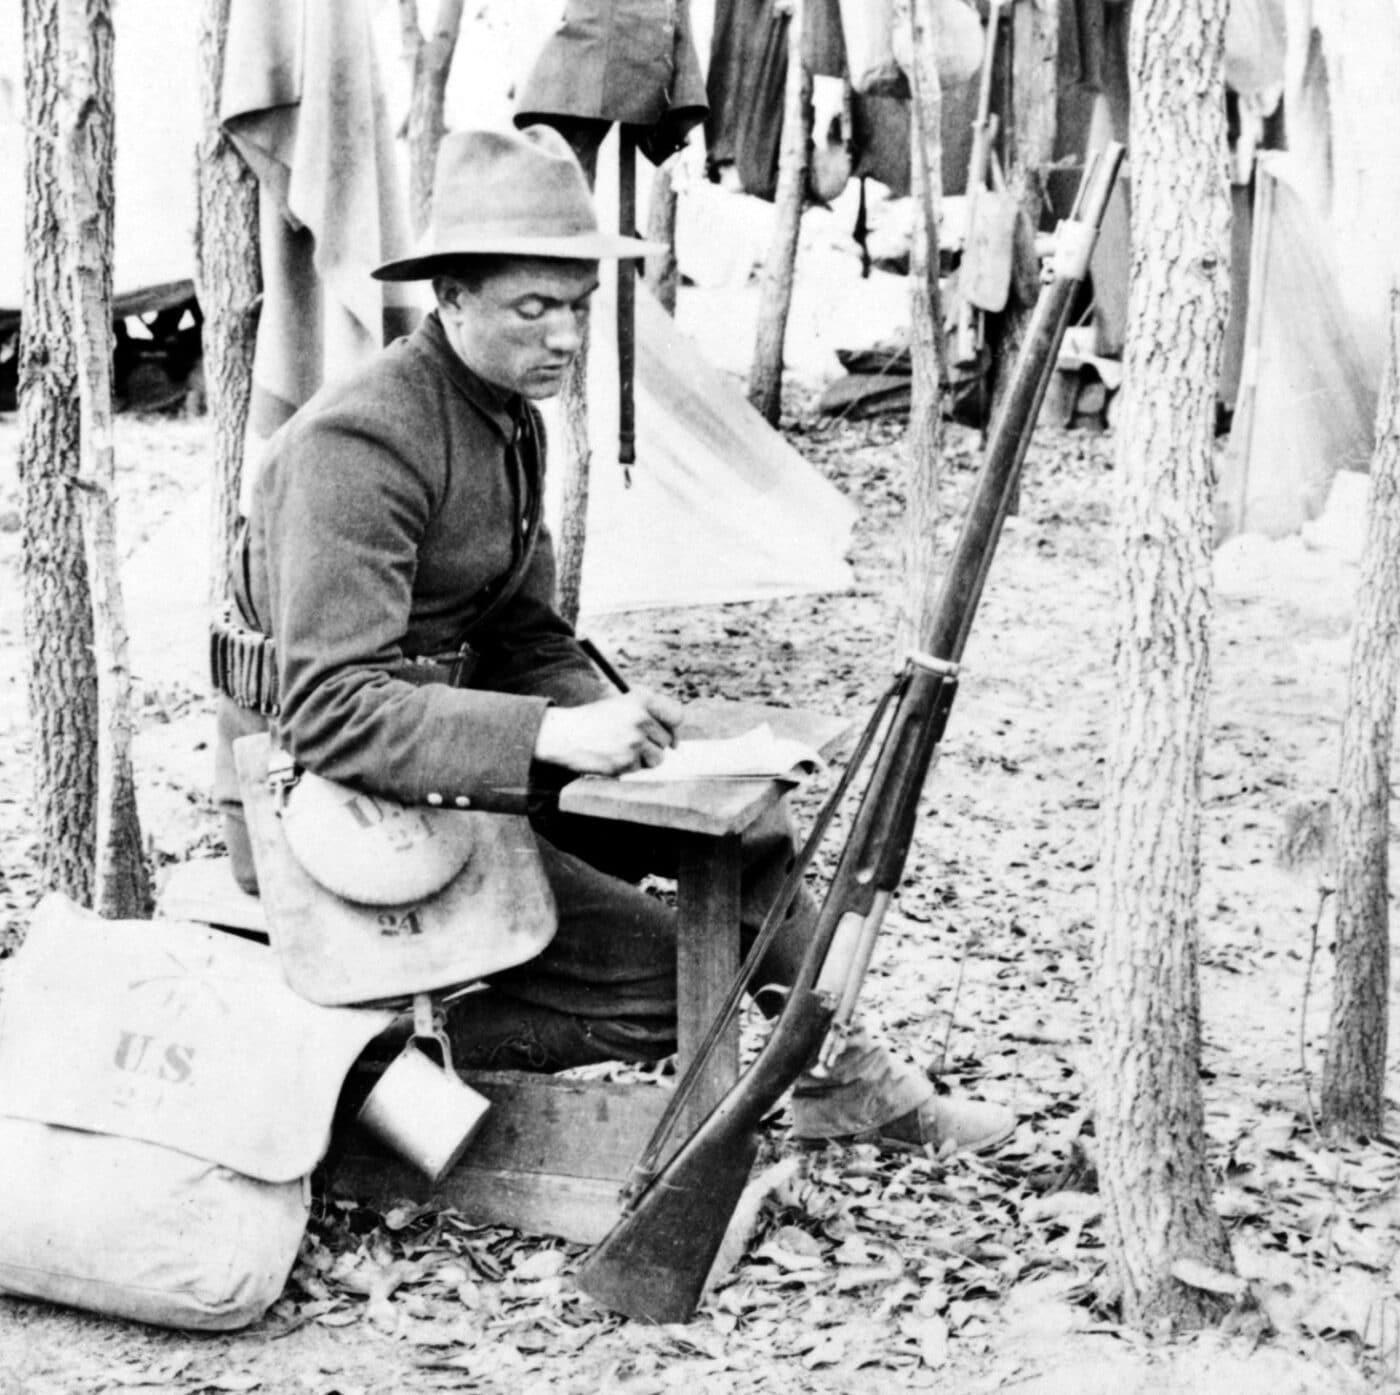 Krag rifle at Camp Chickamauga